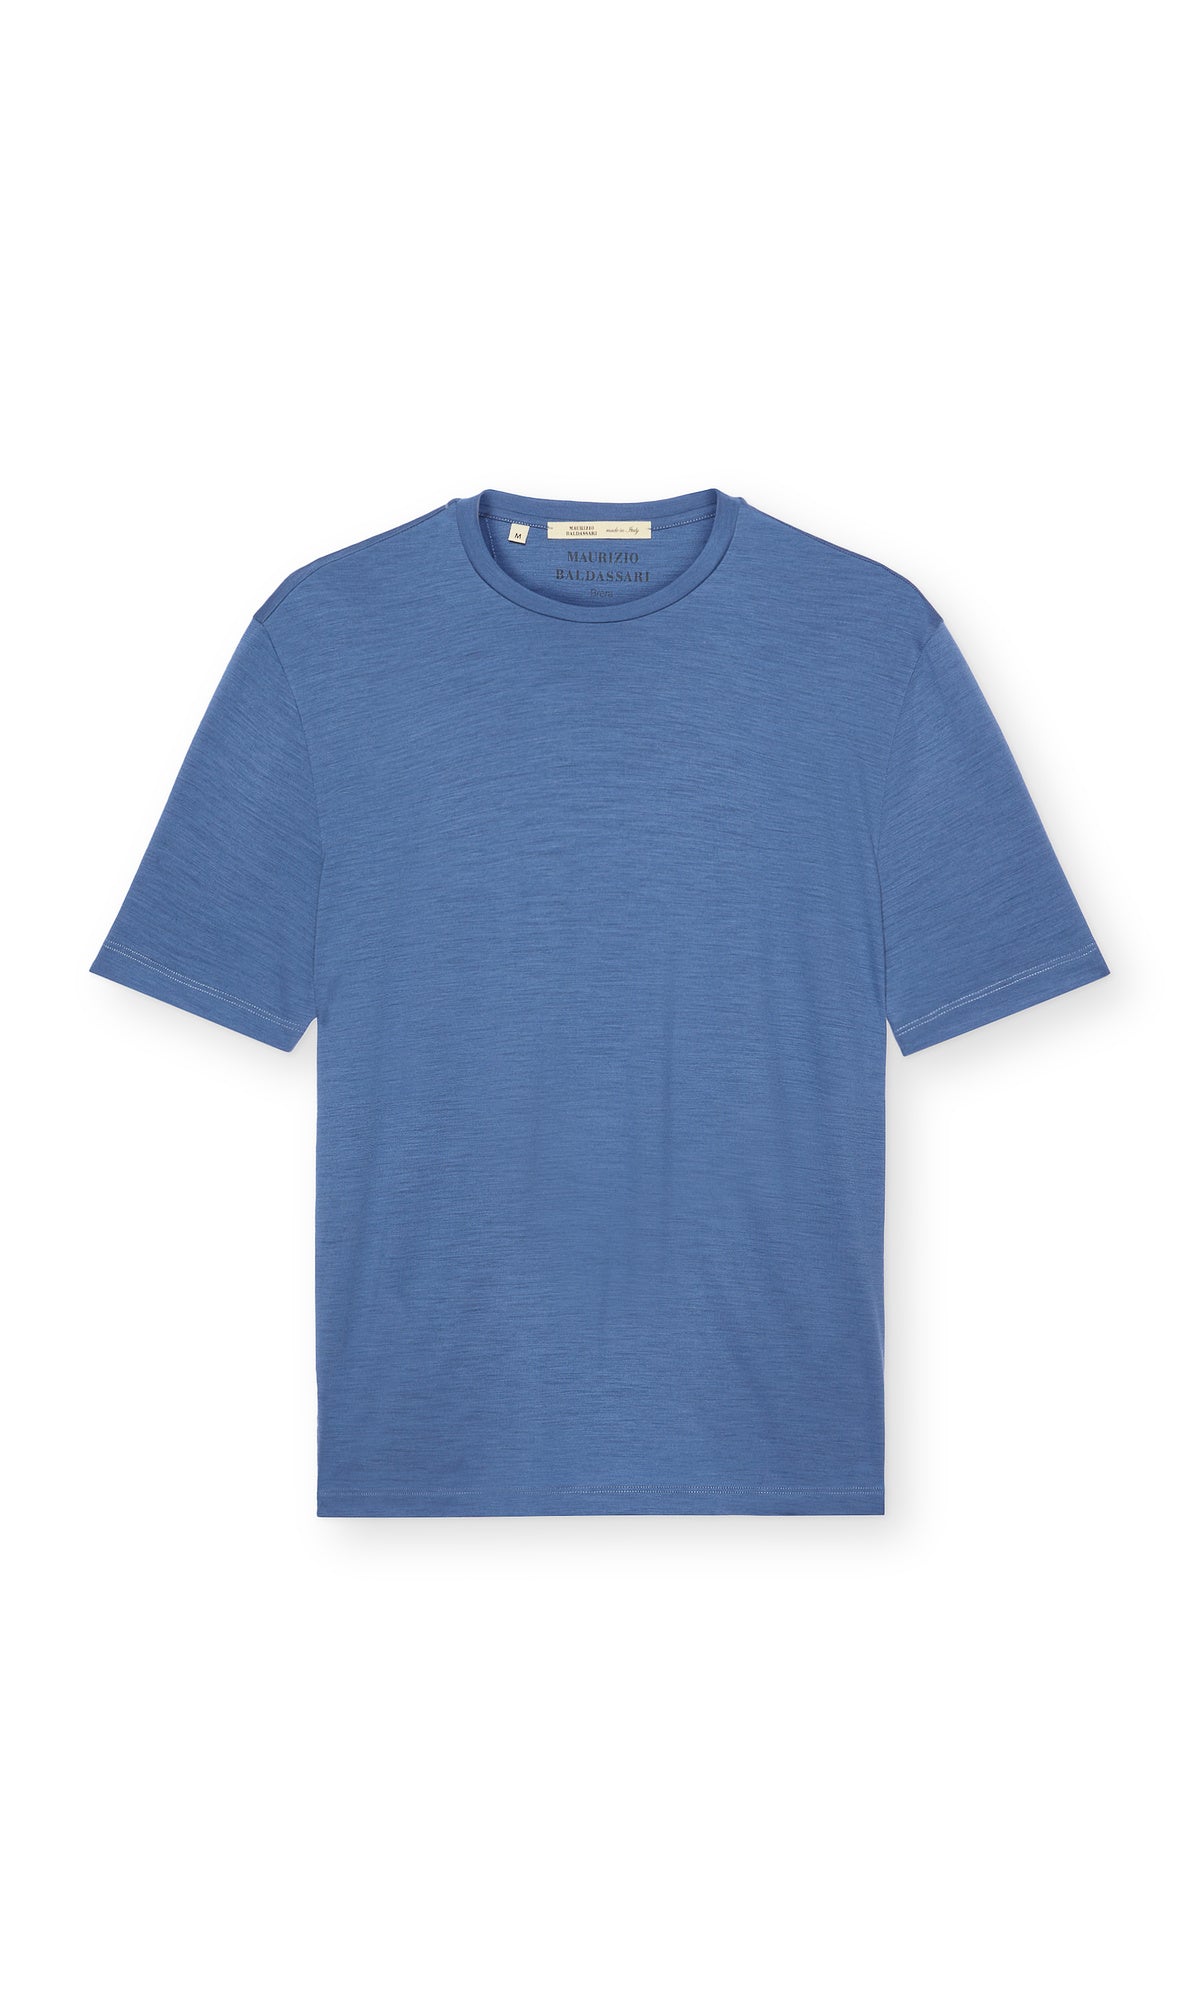 Short-sleeved T-Shirt in pure Merino wool